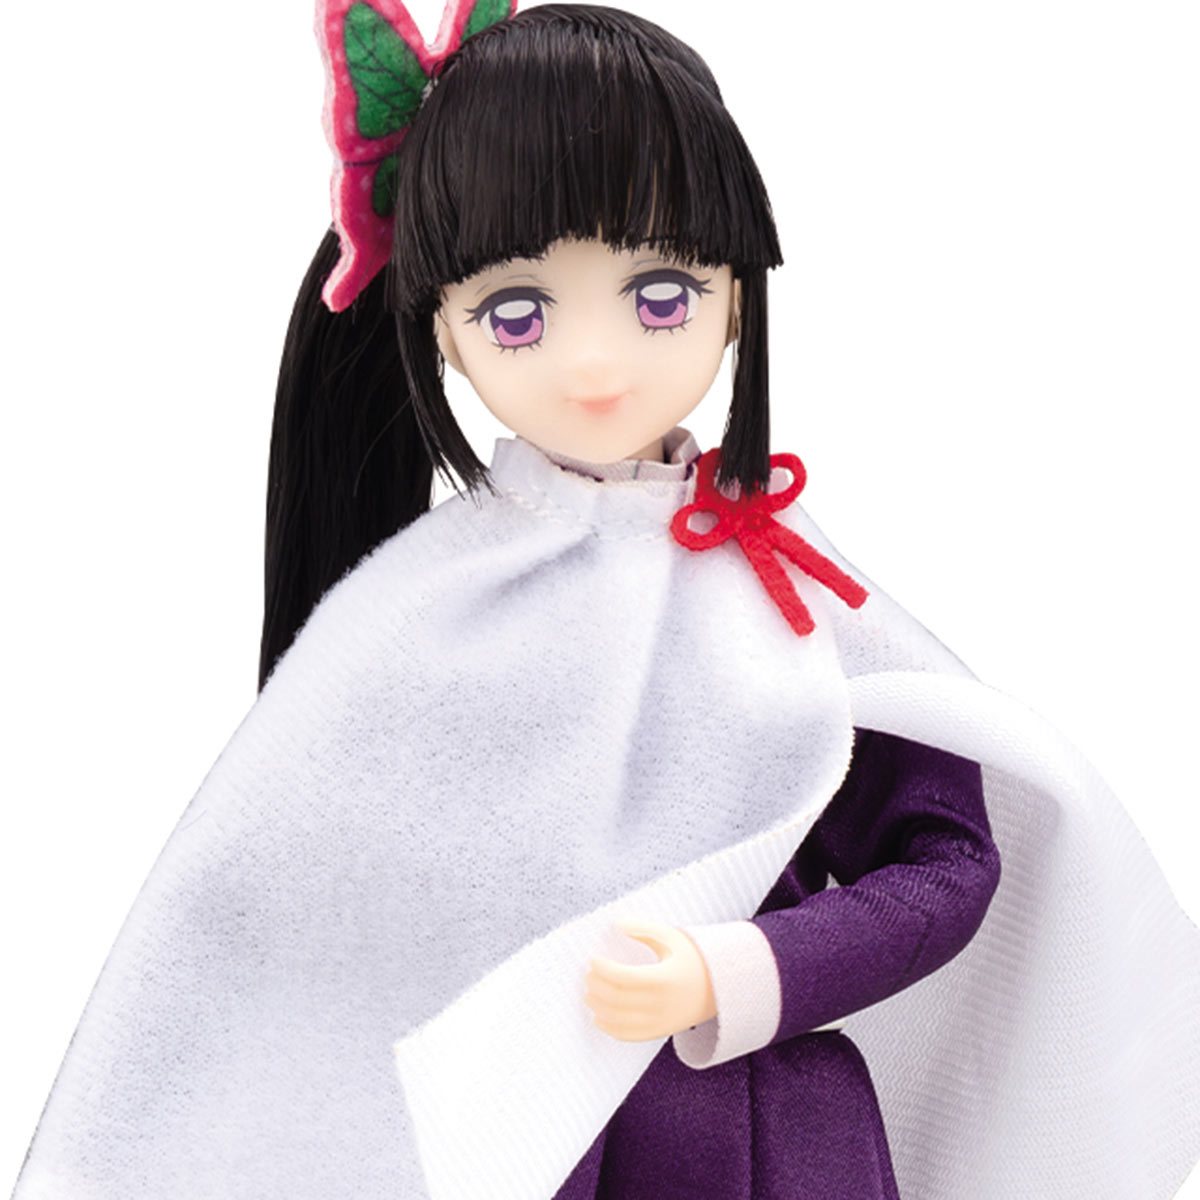 Bandai Fashion Doll: Demon Slayer - Kanao Tsuyuri Figura De Accion